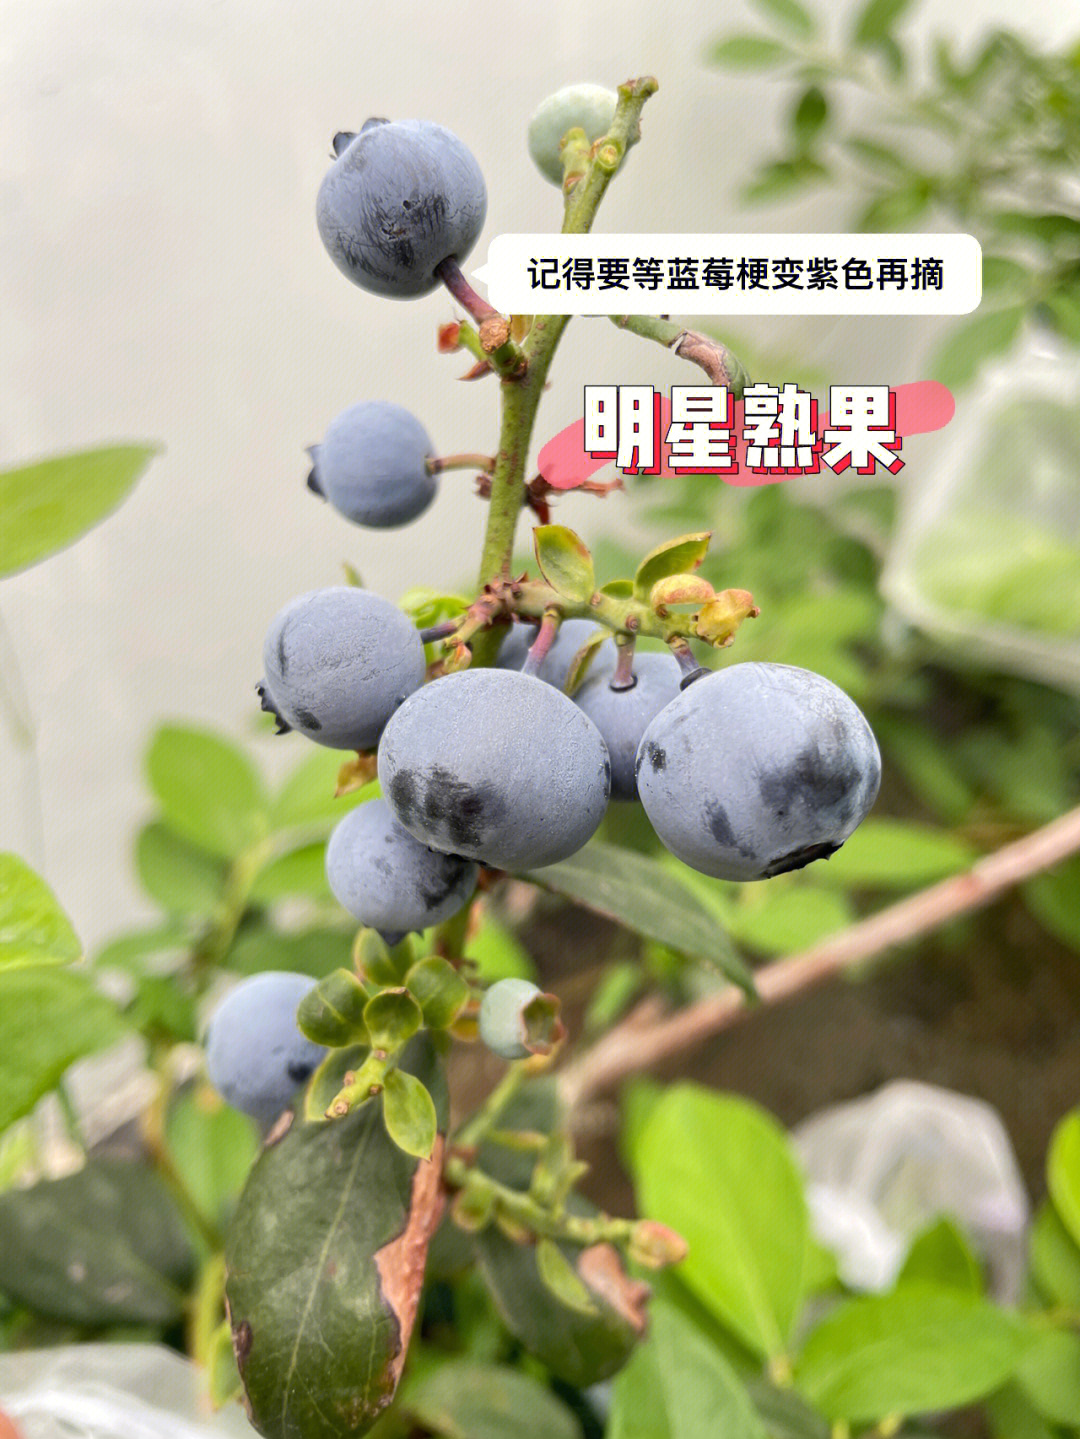 广东蓝莓品种明星天后薄雾